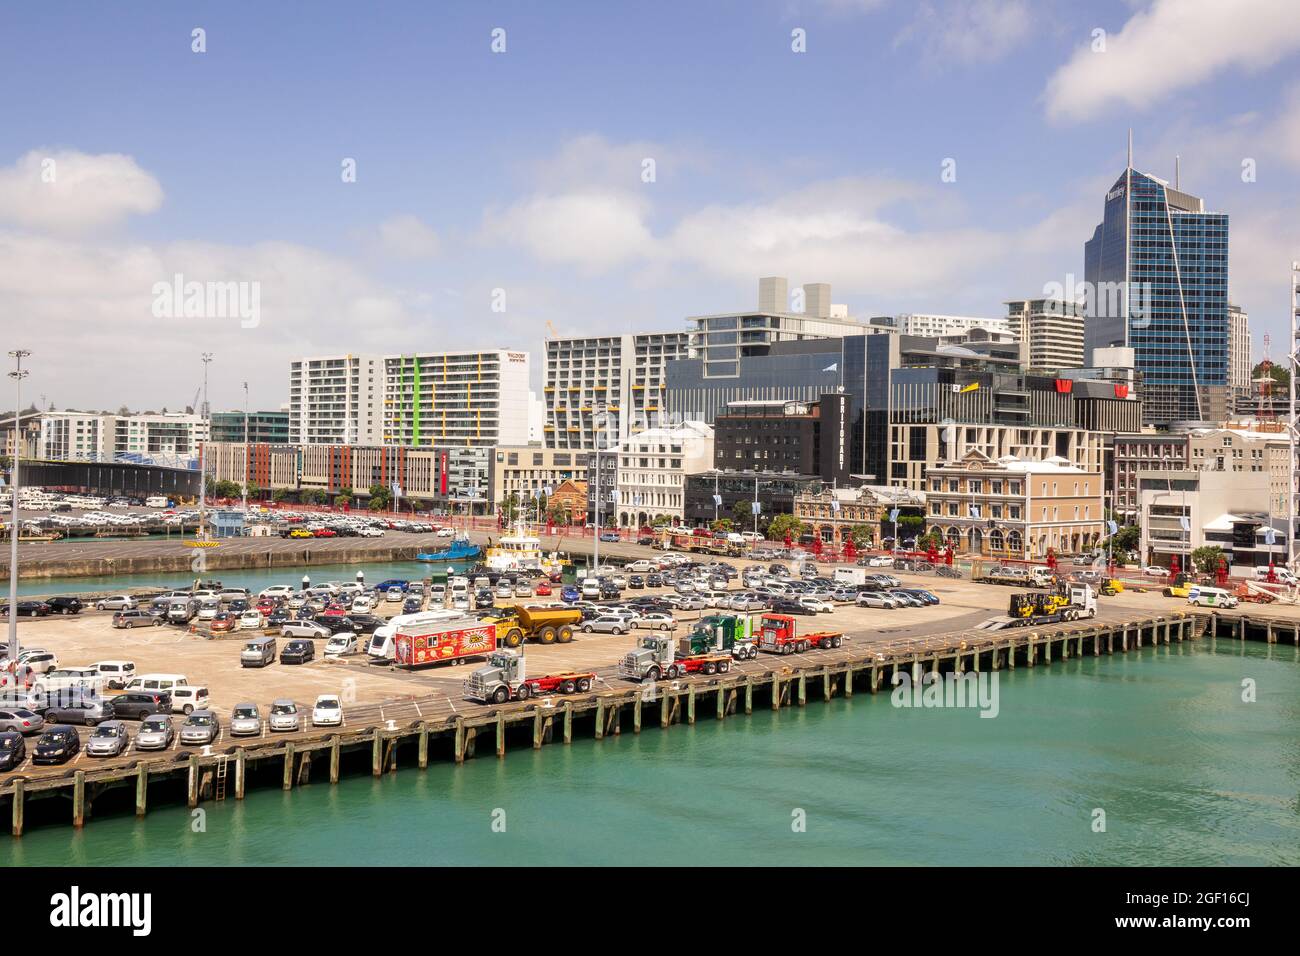 Hafen Von Auckland Mit Neuwagenimporten Geparkt Bereit Für Den Vertrieb, Riesige Gantry Krane Lift Sea Containers Auckland Neuseeland Stockfoto